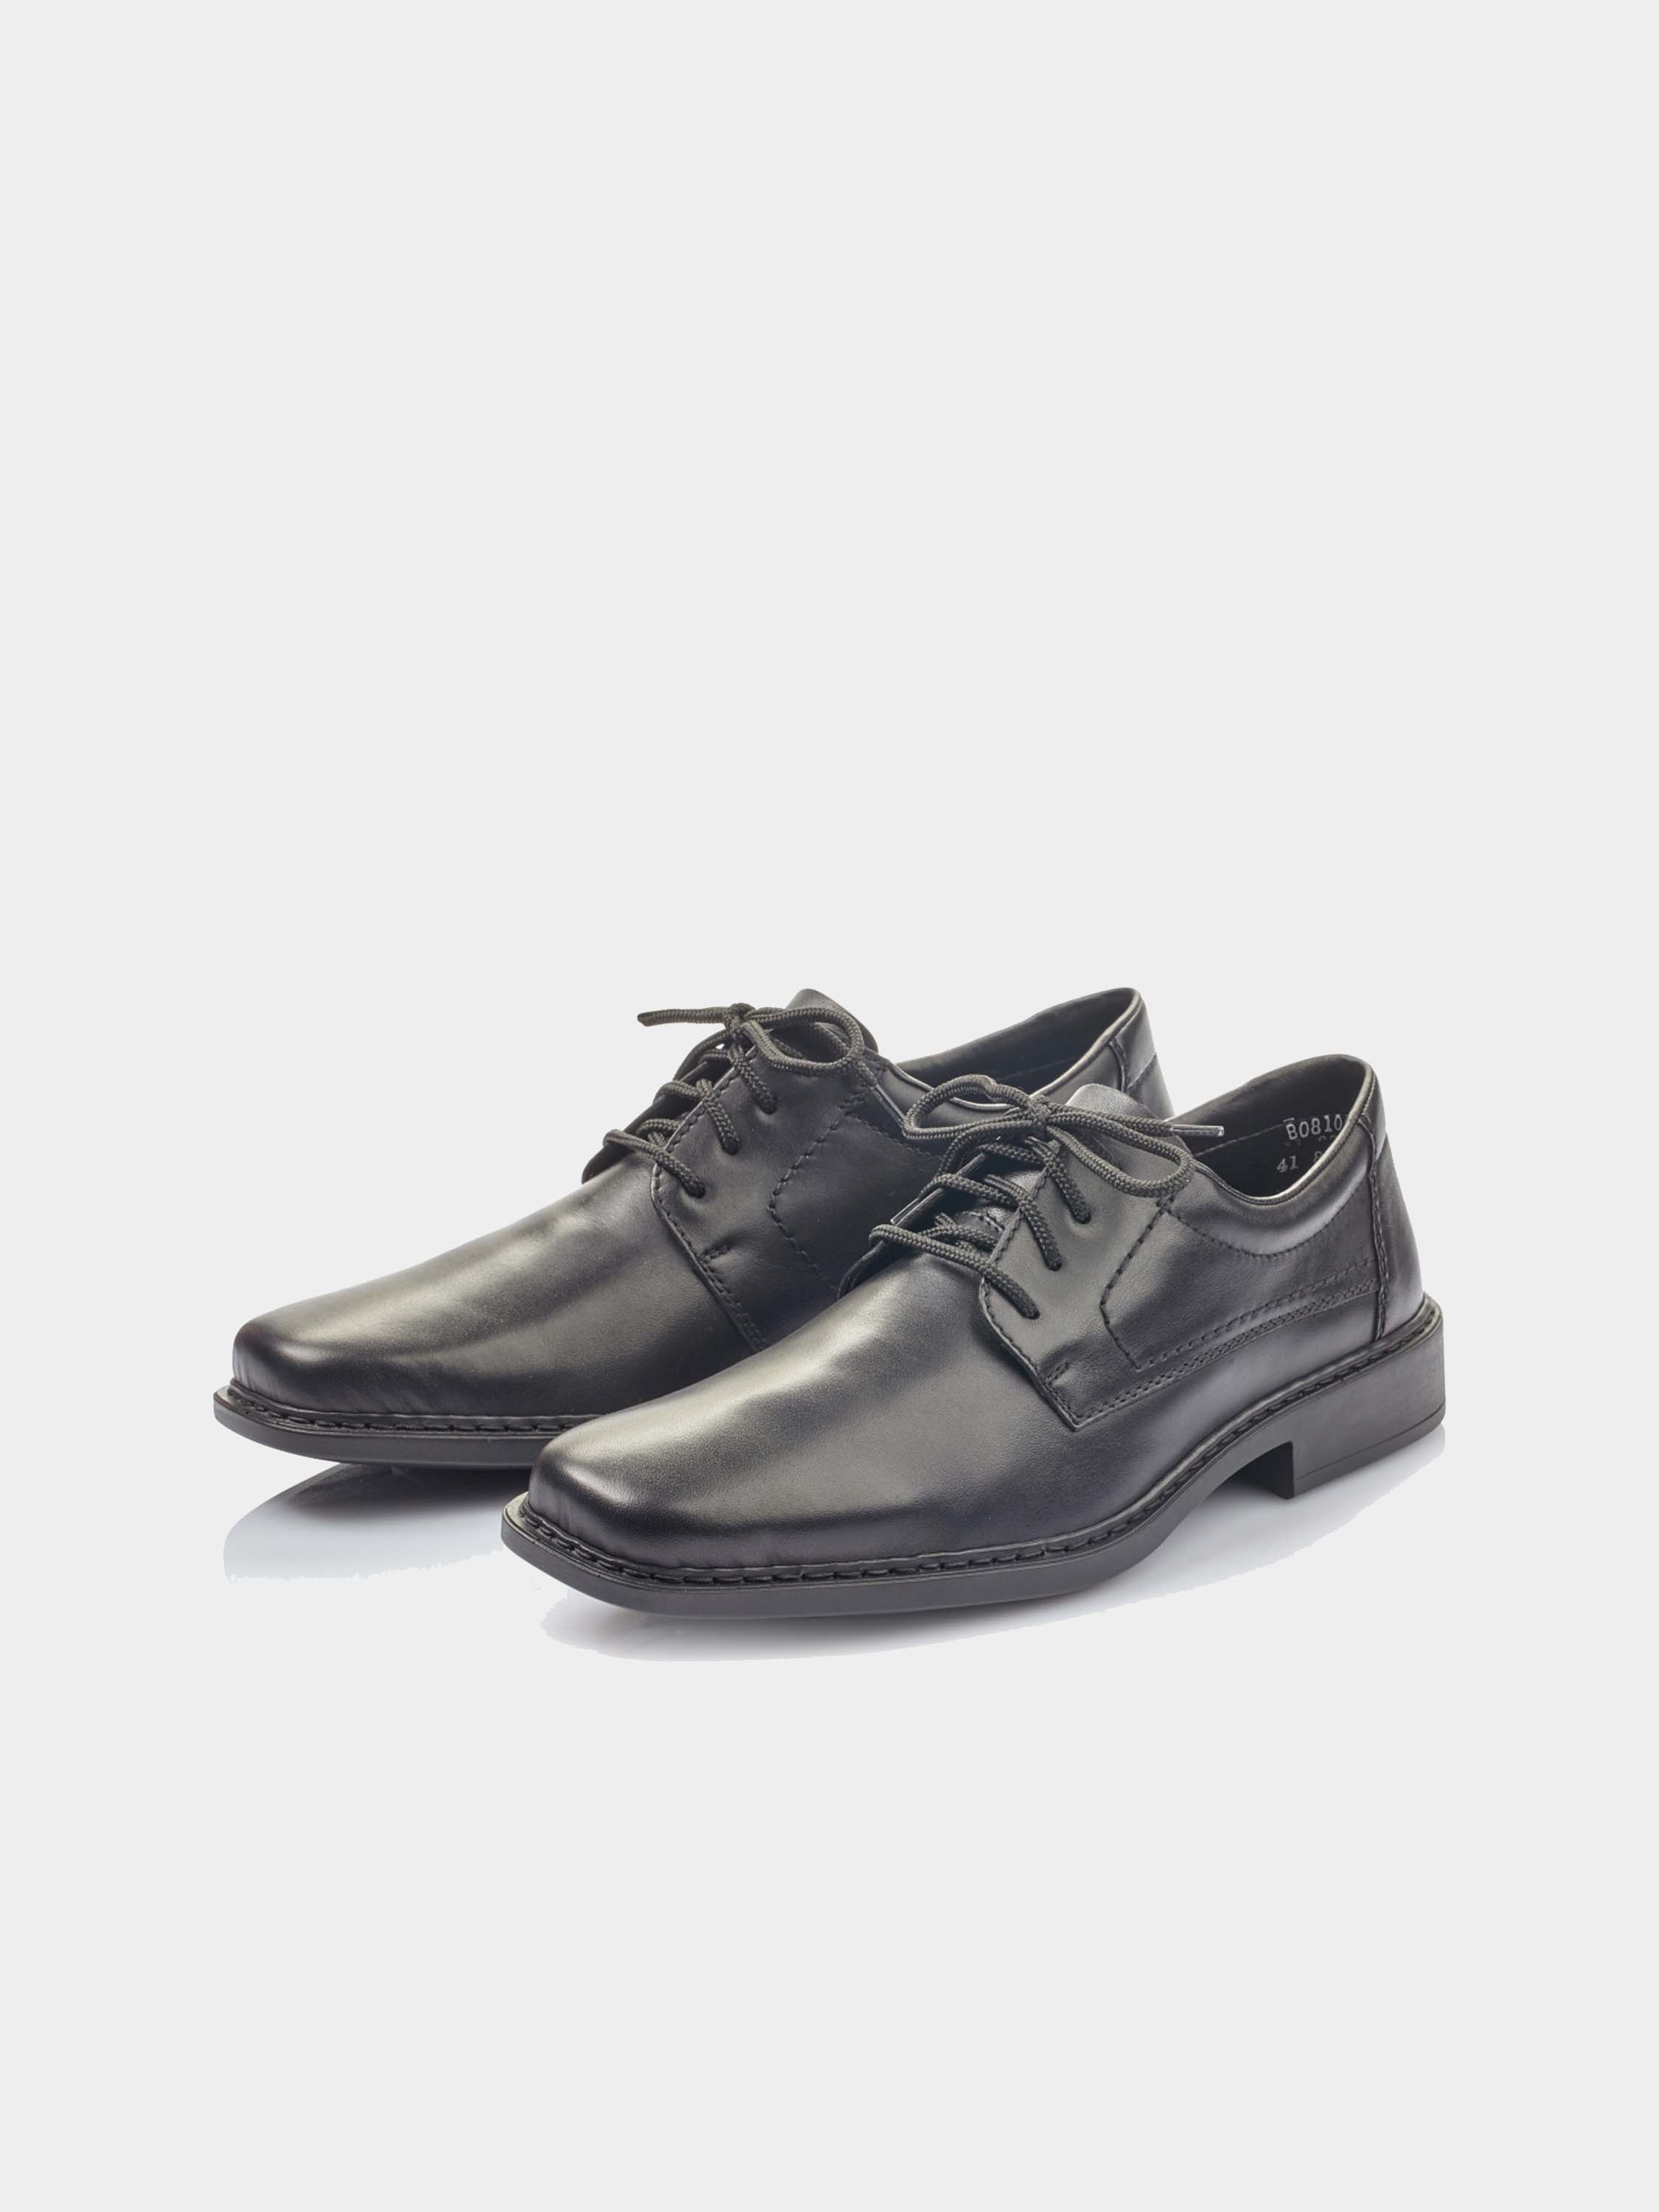 Rieker B0810-00 Men's Square Toe Formal Leather Shoes #color_Black